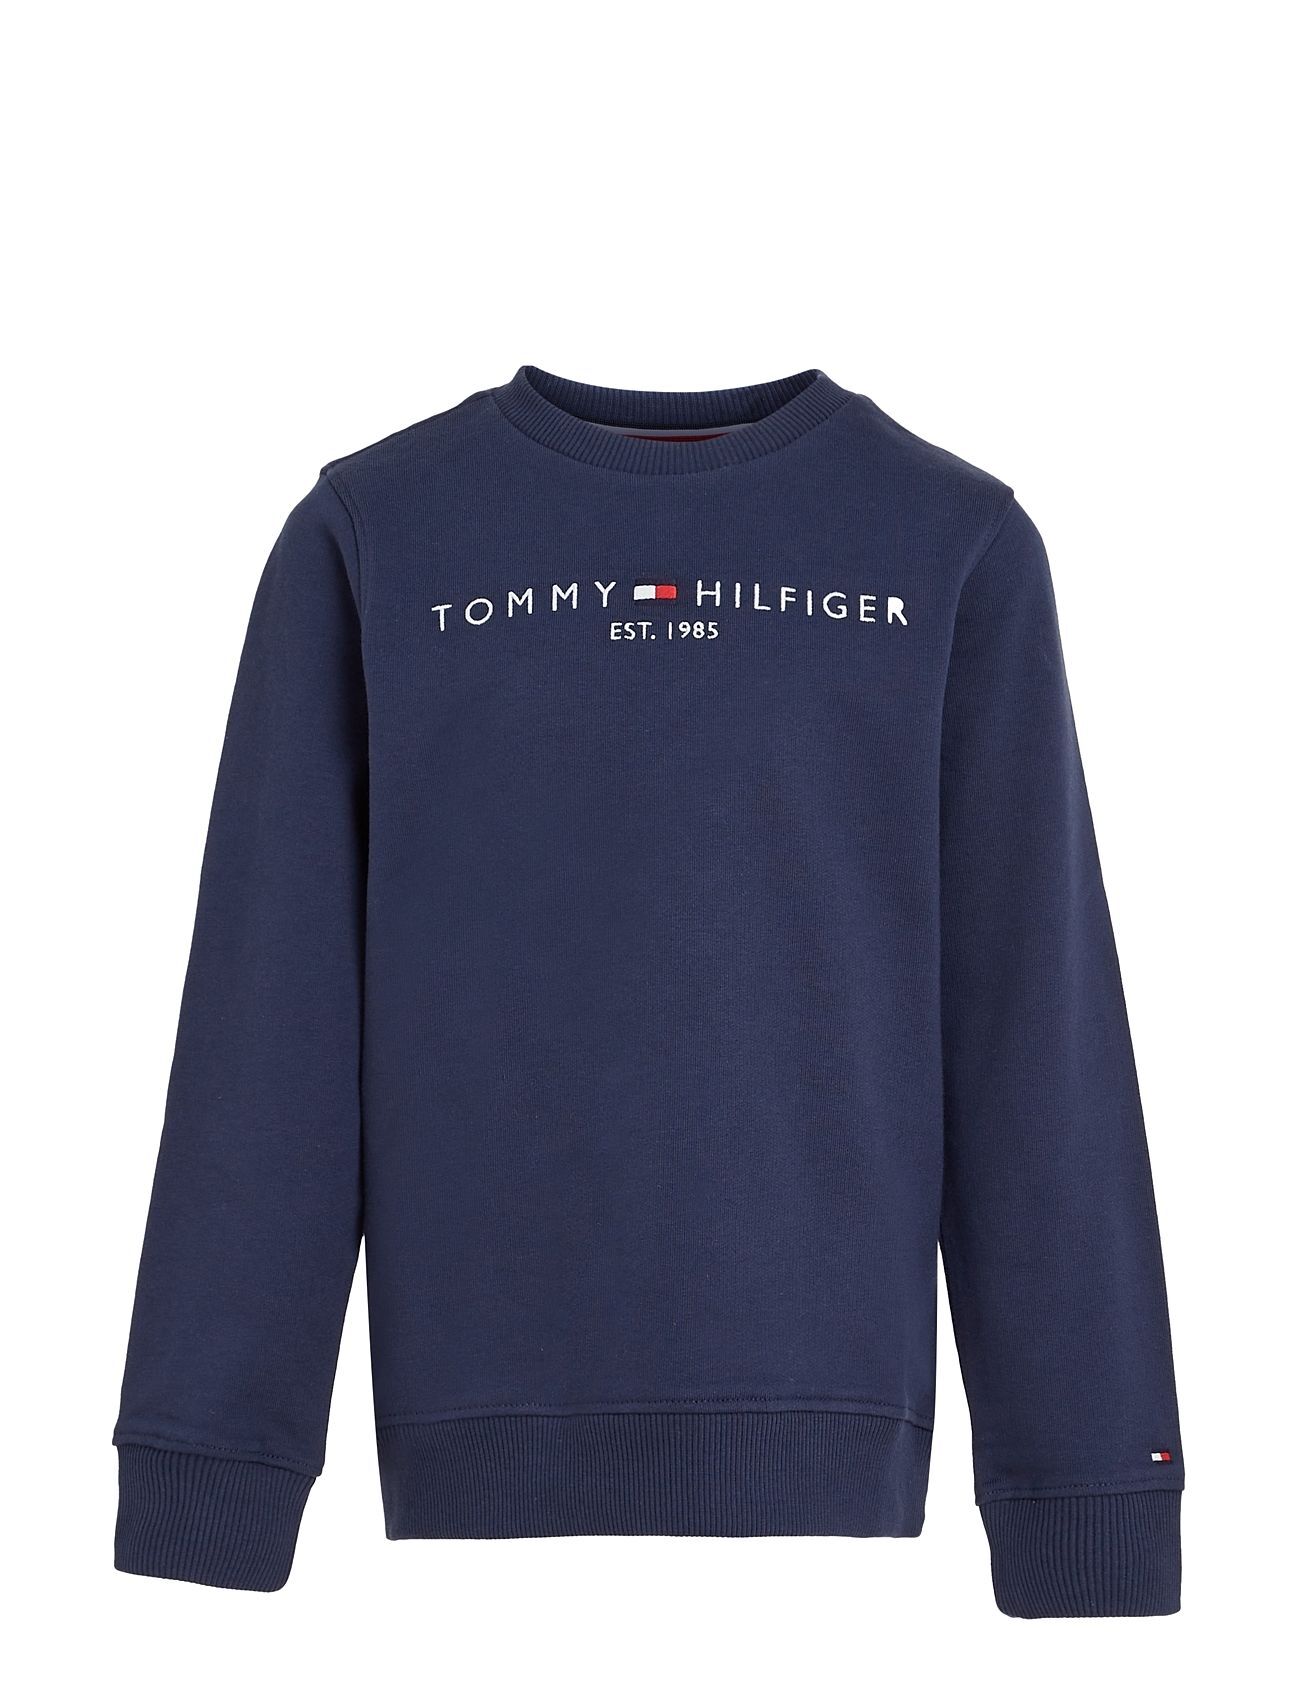 Tommy Hilfiger Essential Sweatshirt Sweat-shirt Genser Blå Tommy Hilfiger